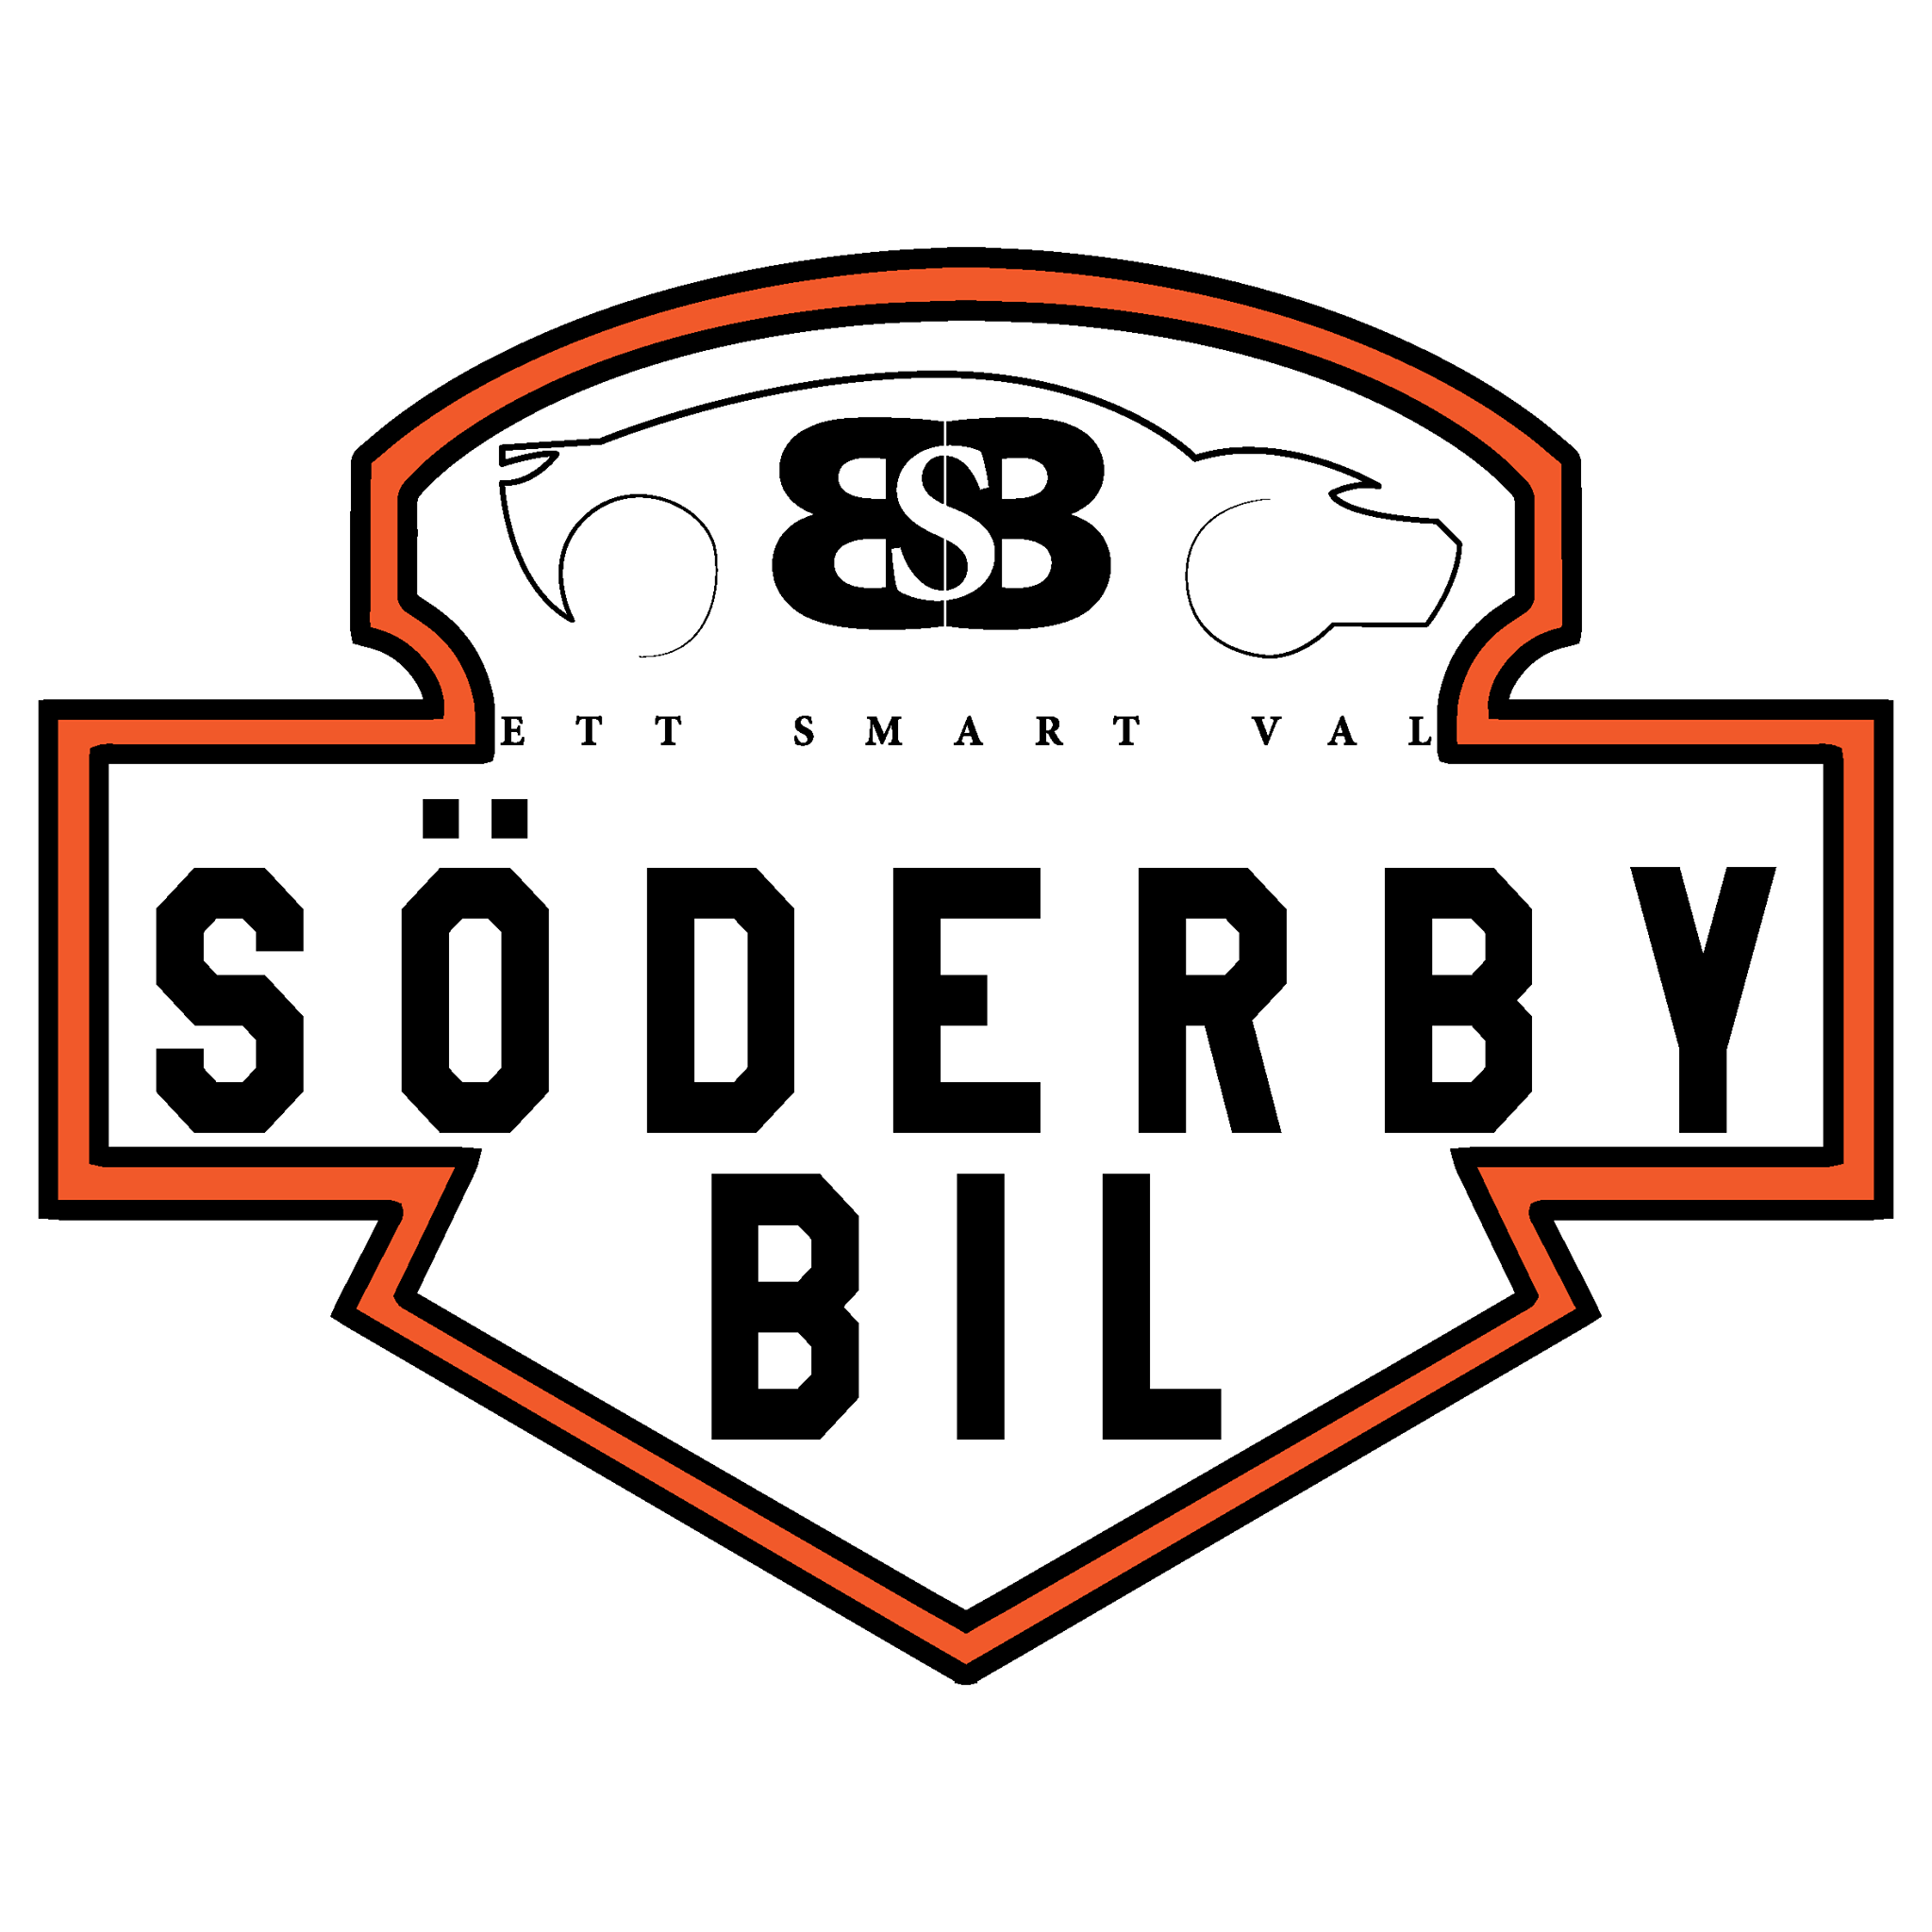 Söderby Bil AB logo